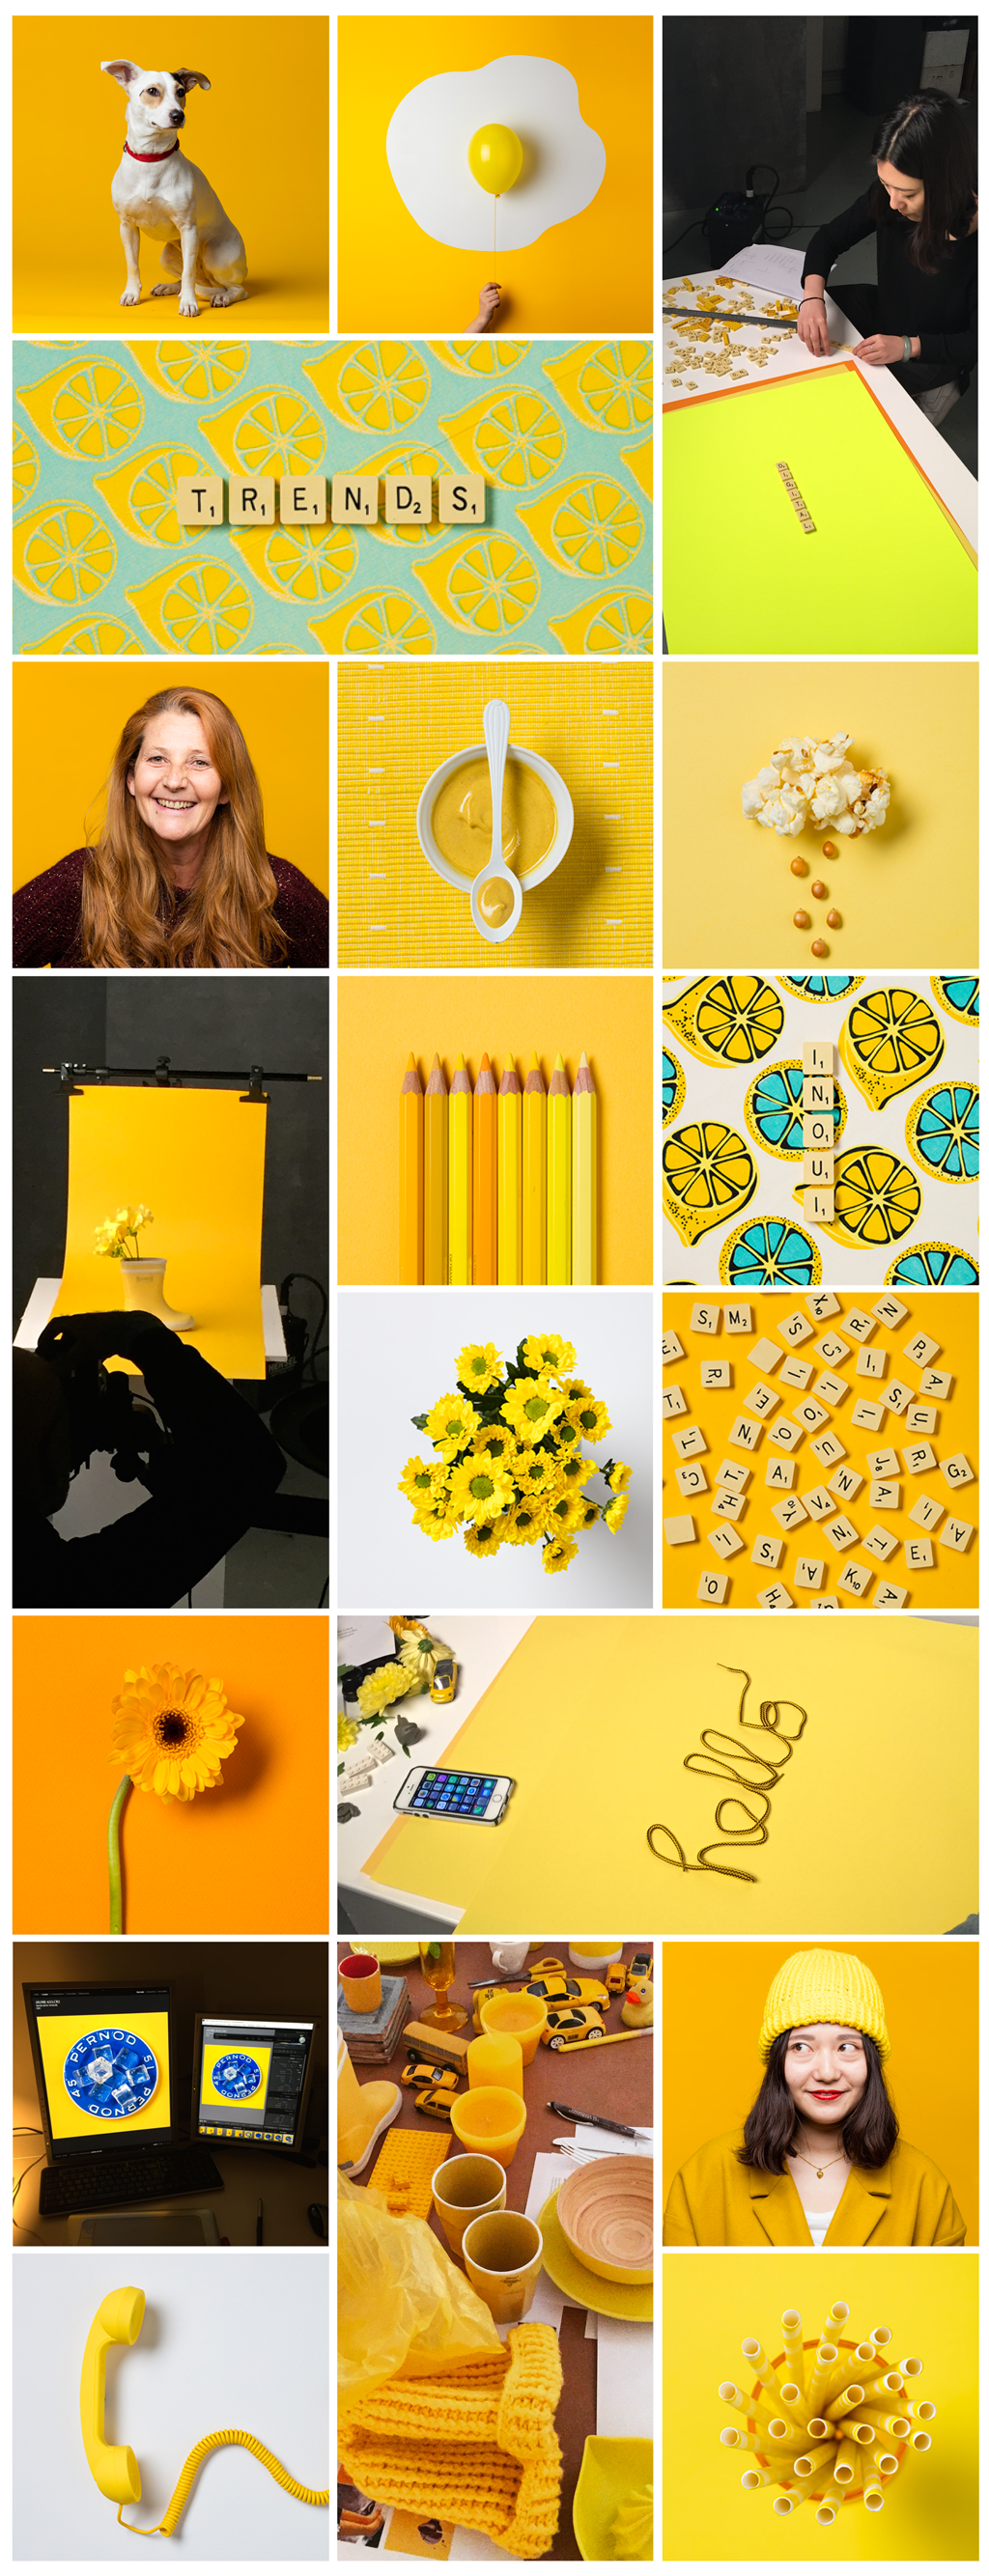 L'agence design consumer Inoui fait son shooting jaune